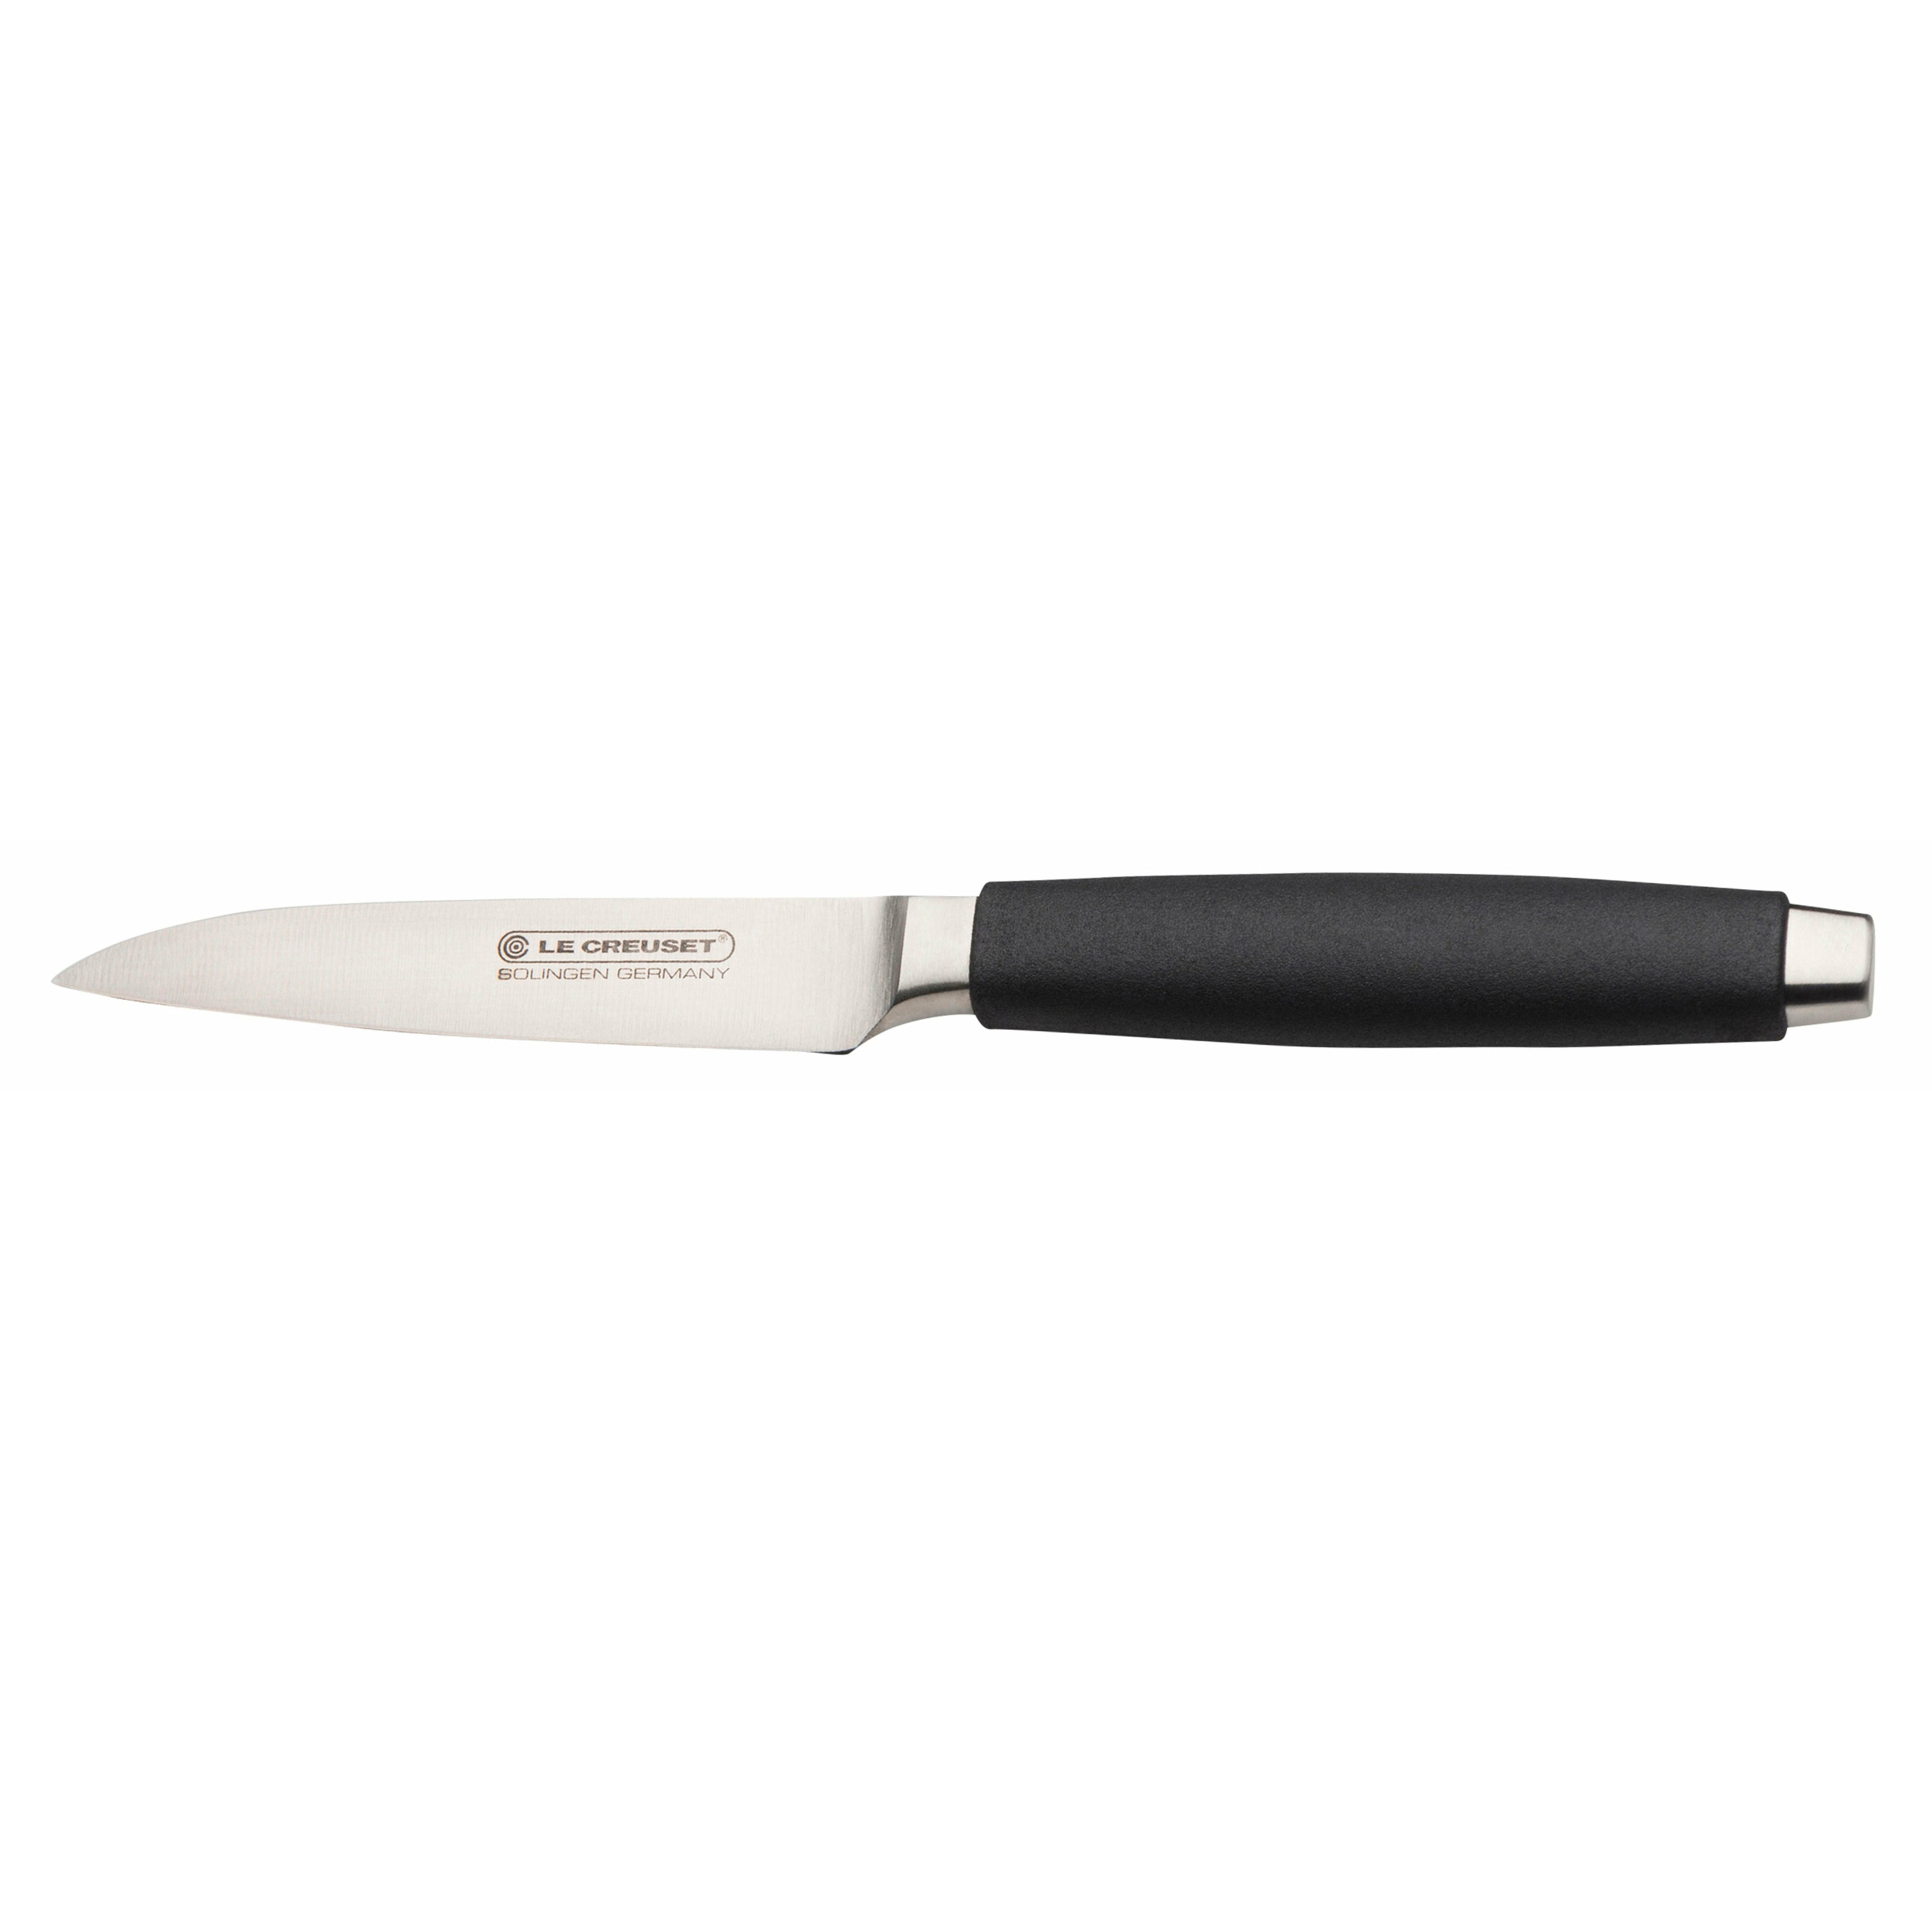 Le Creuset Paring Knife Standard með svörtu handfangi, 9 cm